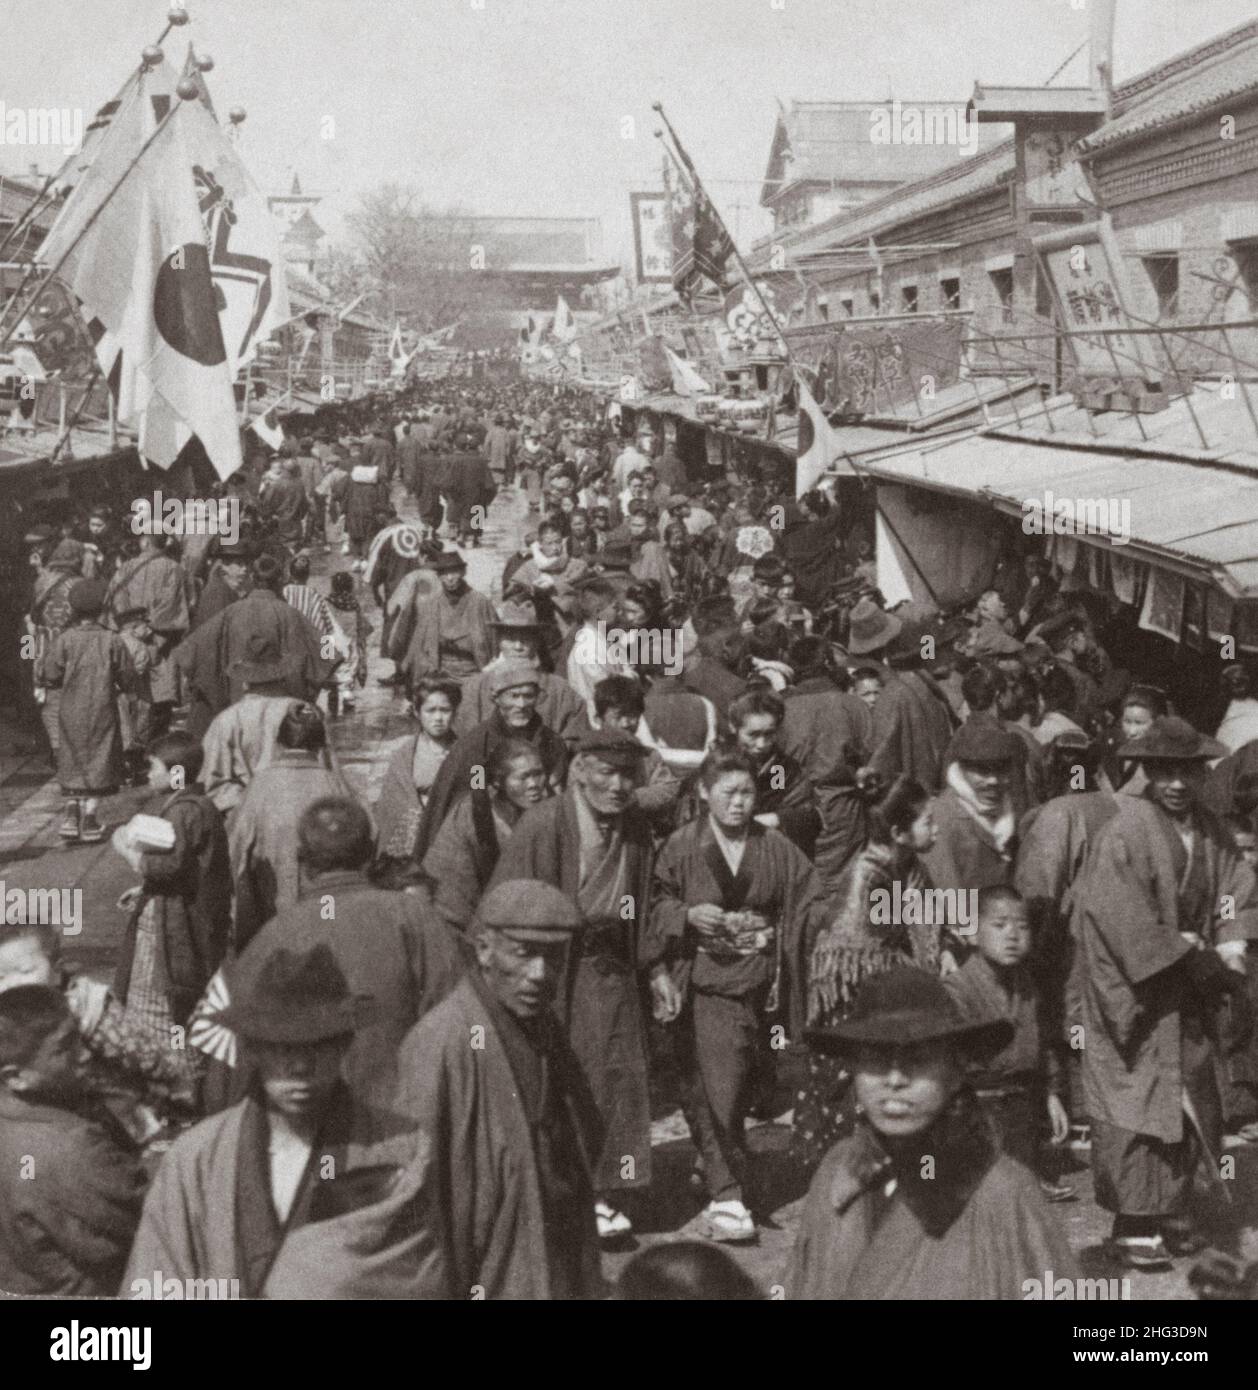 Photo d'époque du Japon du 19th siècle.Foule dans la rue menant au parc Asakusa, le célèbre quartier de loisirs de Tokyo, au Japon.1905 Banque D'Images